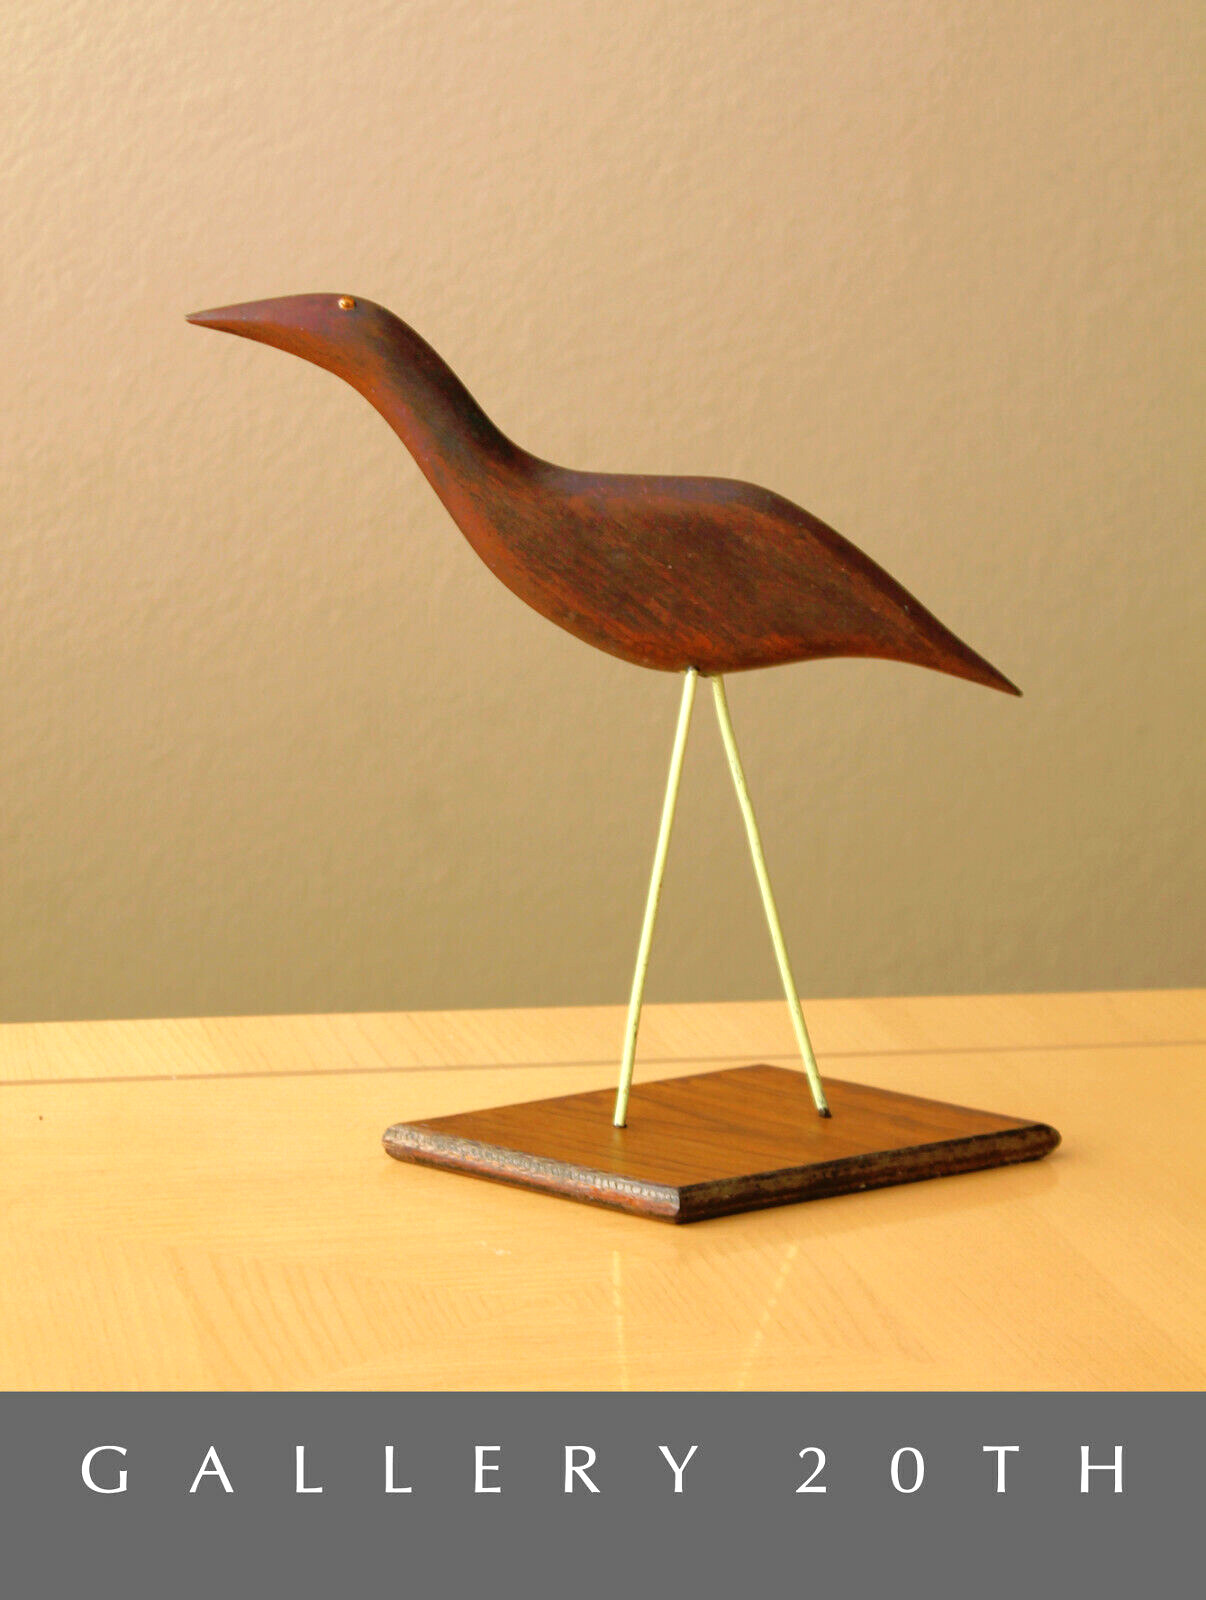 SUPERB MID CENTURY MODERN TEAK BIRD SCULPTURE VTG 1950S ICONIC GOOGLY EYES